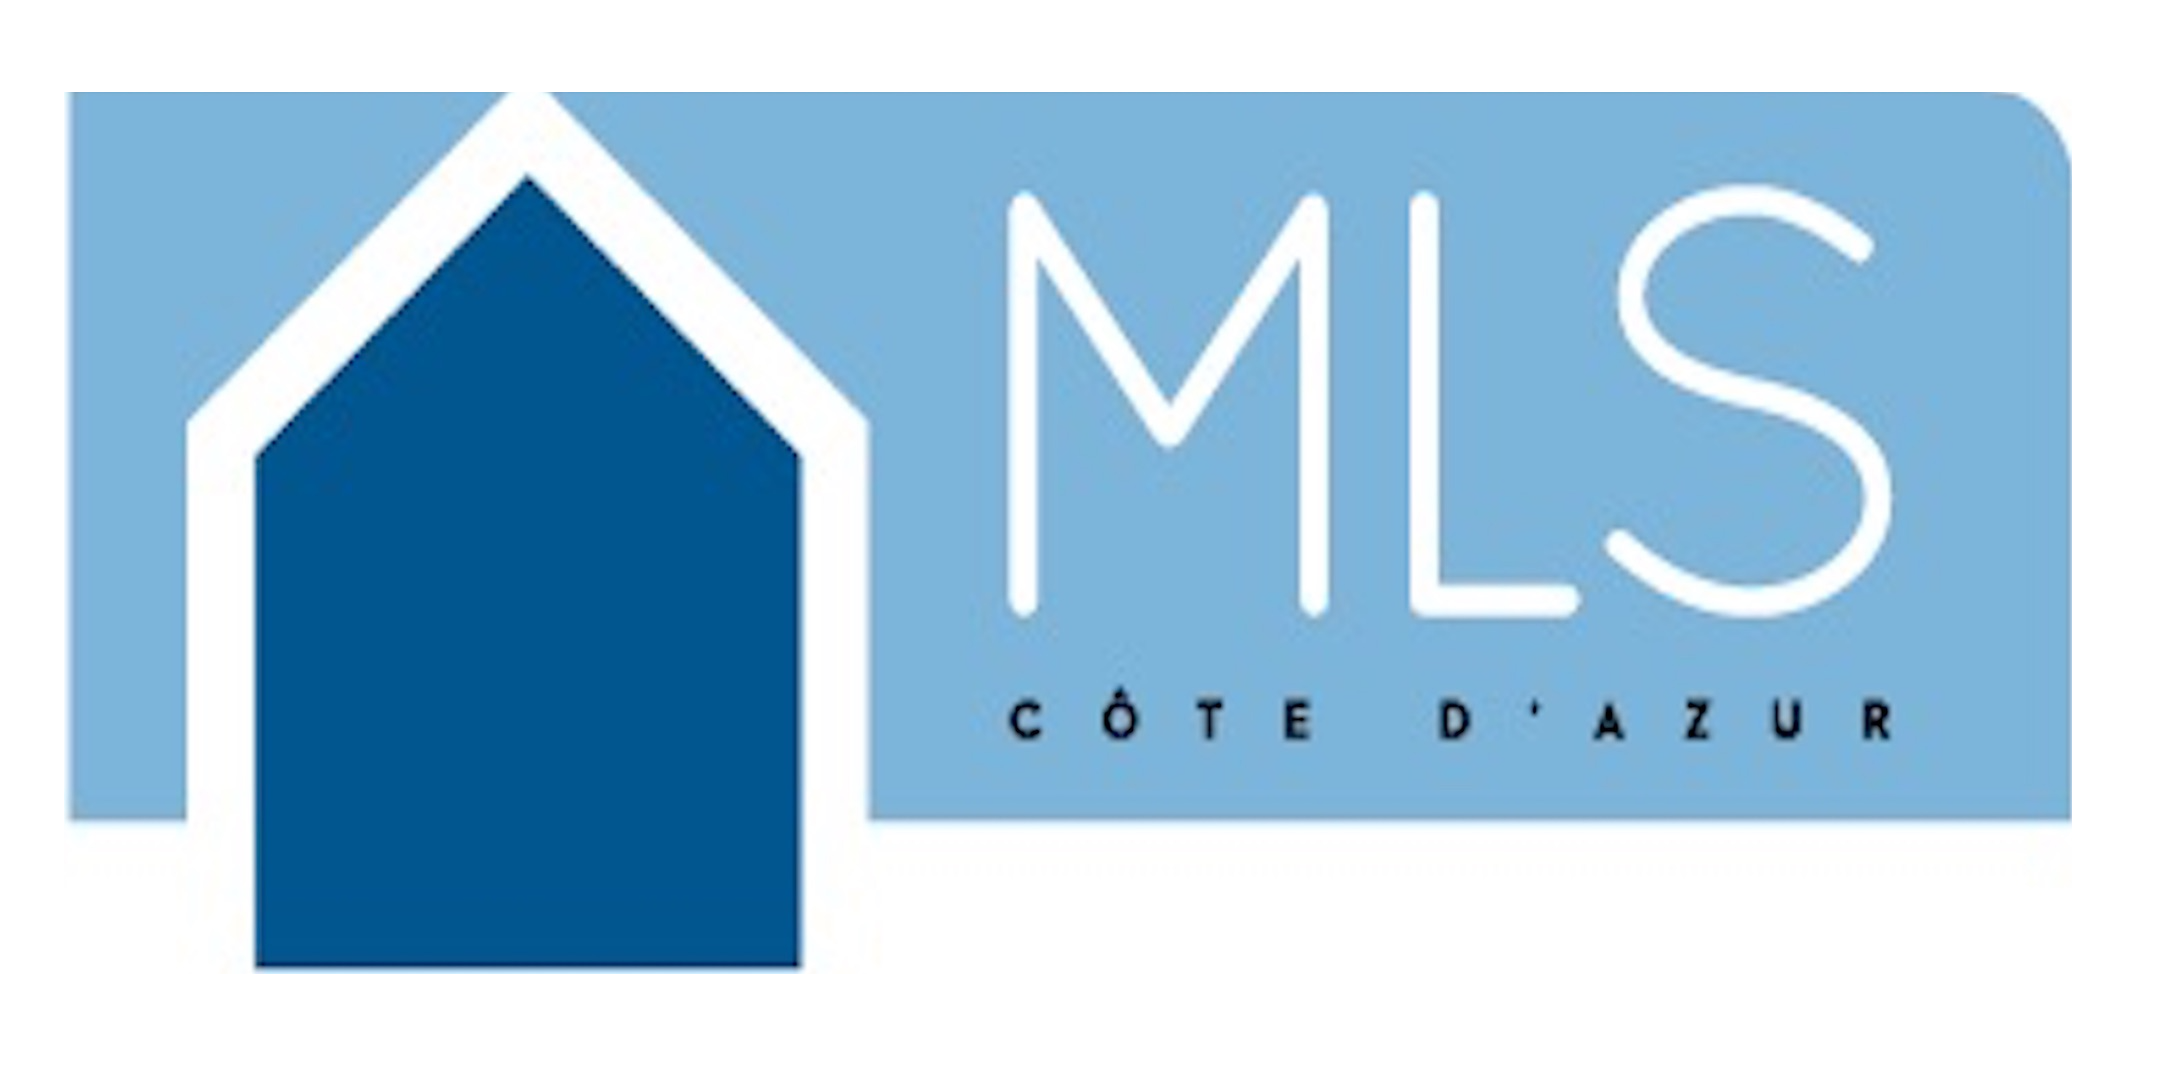 MLS Côte d'Azur - Regroupement d'agences immobilières - Partenaire COÉOS Groupe